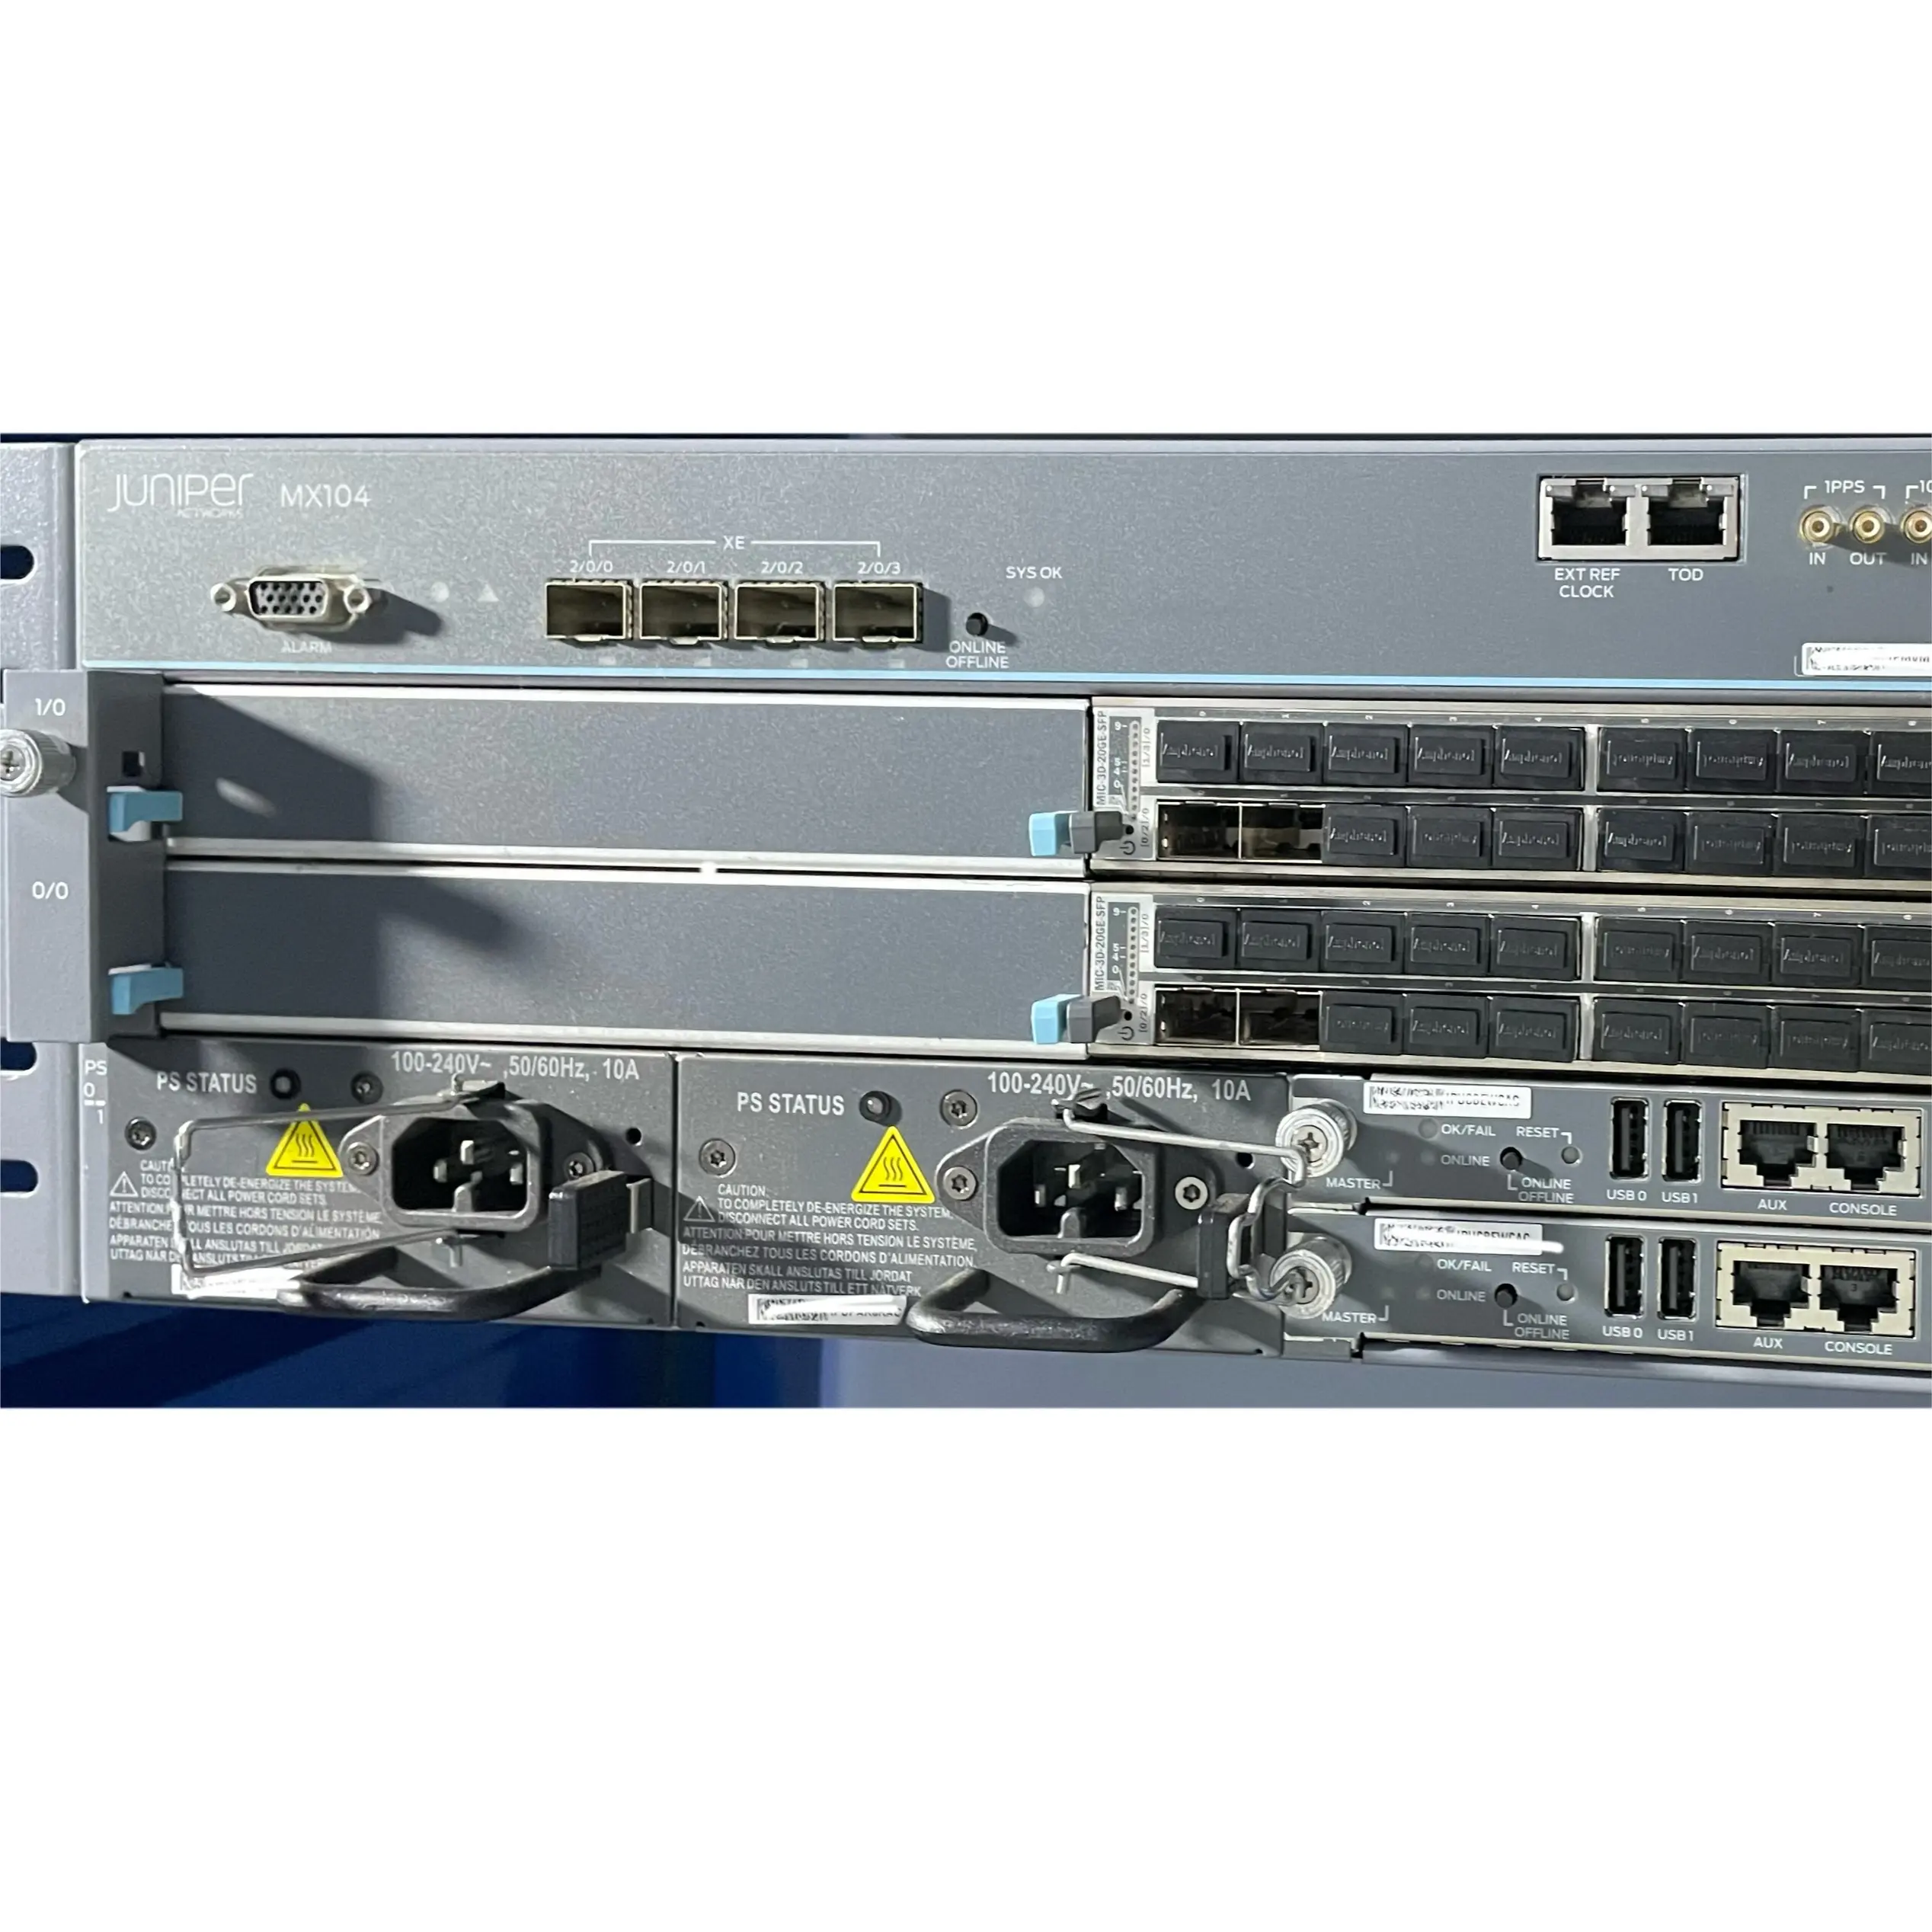 ジュニパーネットワークオリジナル使用MX104ネットワークジュニパールーターアクセスおよび集約ルーター